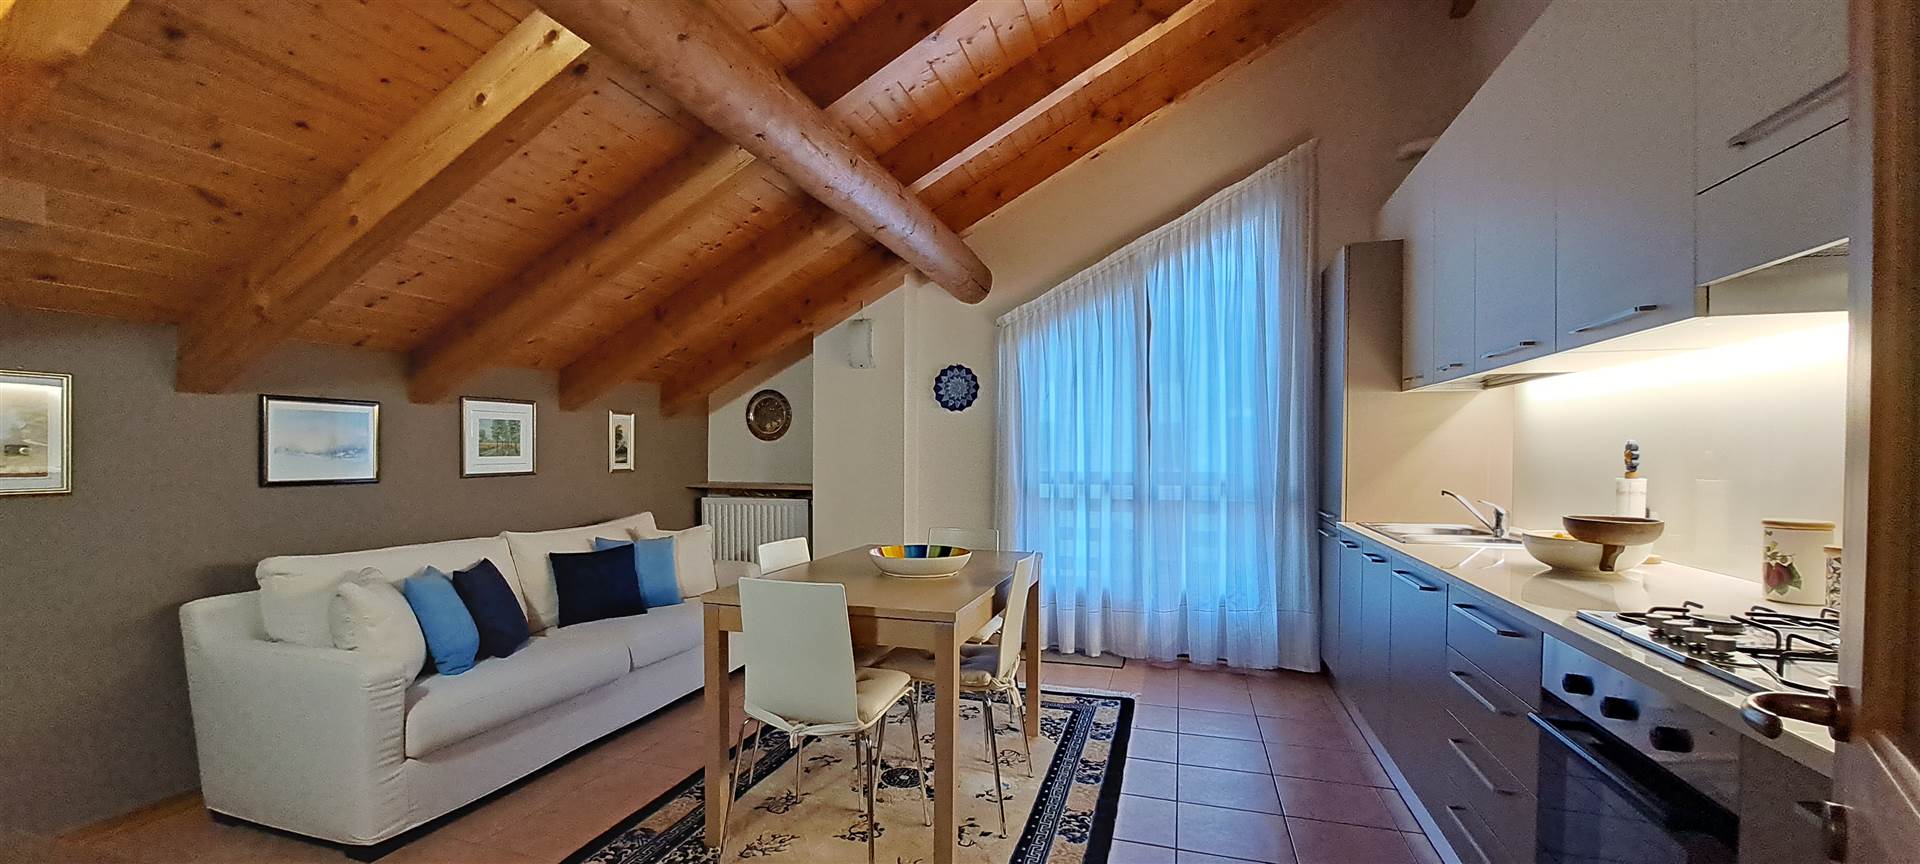 Appartamento in vendita a Santa Maria Maggiore, 2 locali, prezzo € 148.000 | PortaleAgenzieImmobiliari.it